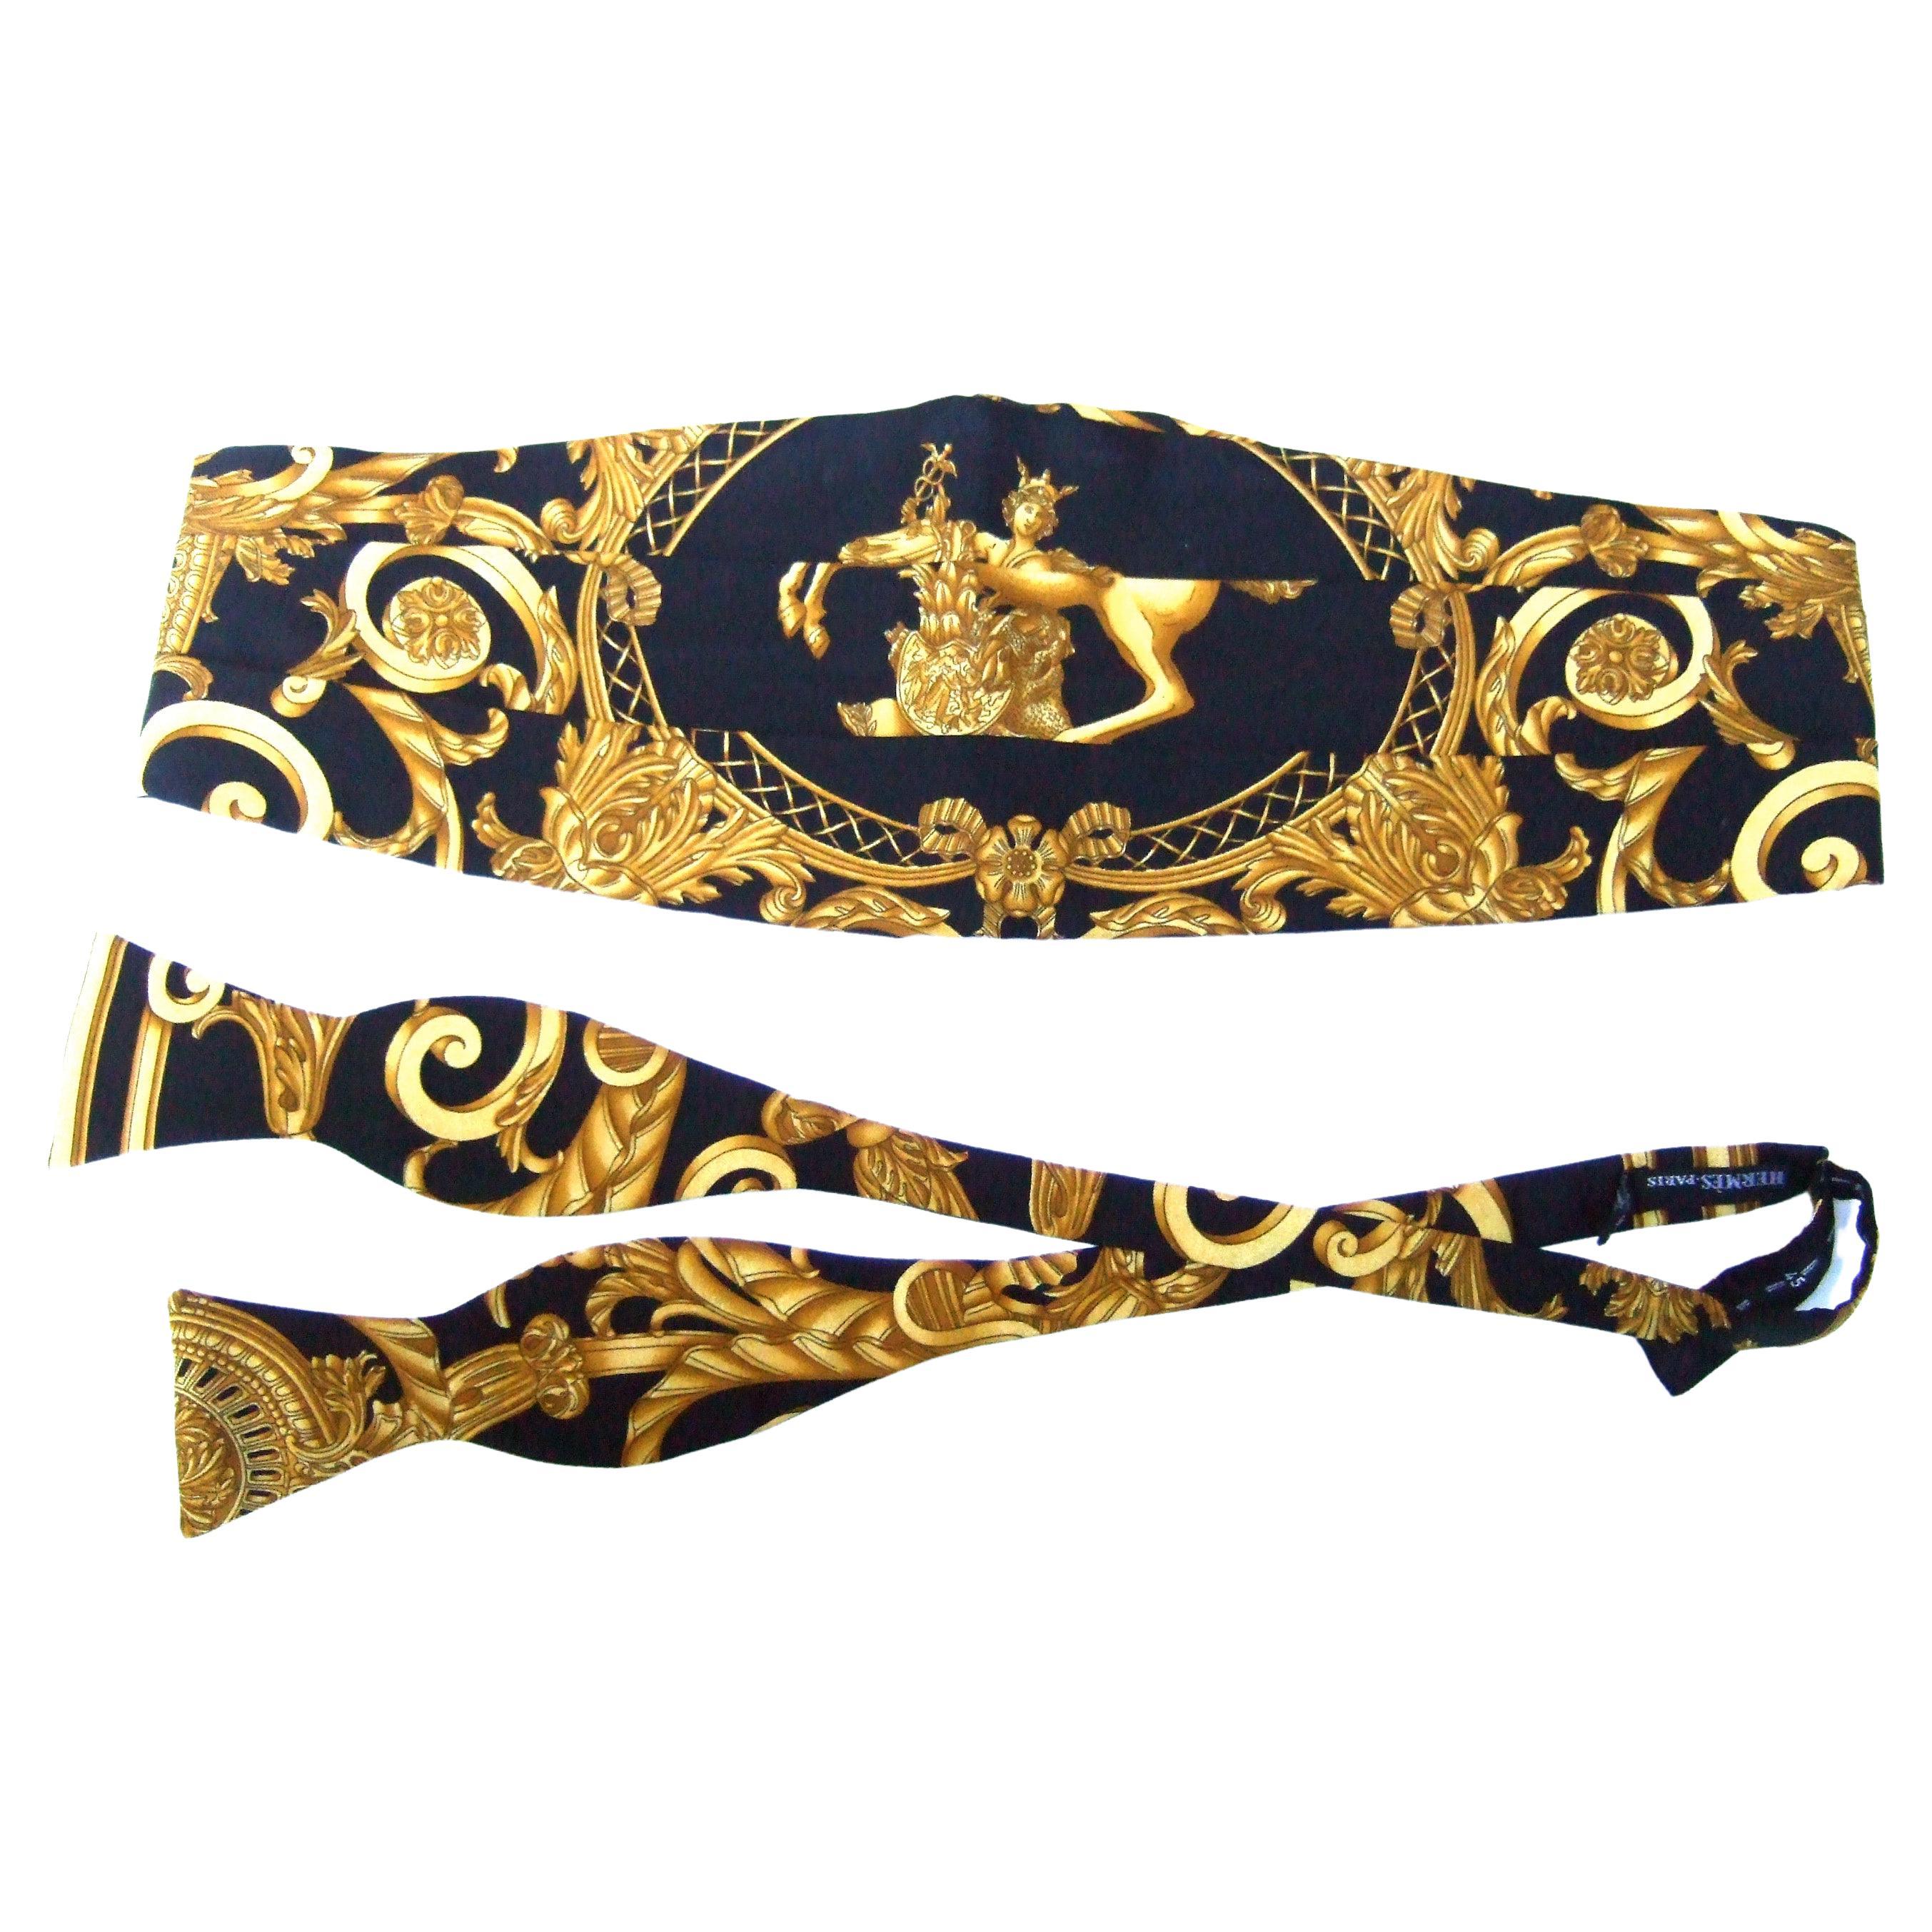 Hermes Bow Tie - 3 For Sale on 1stDibs | hermes bow ties, hermes 